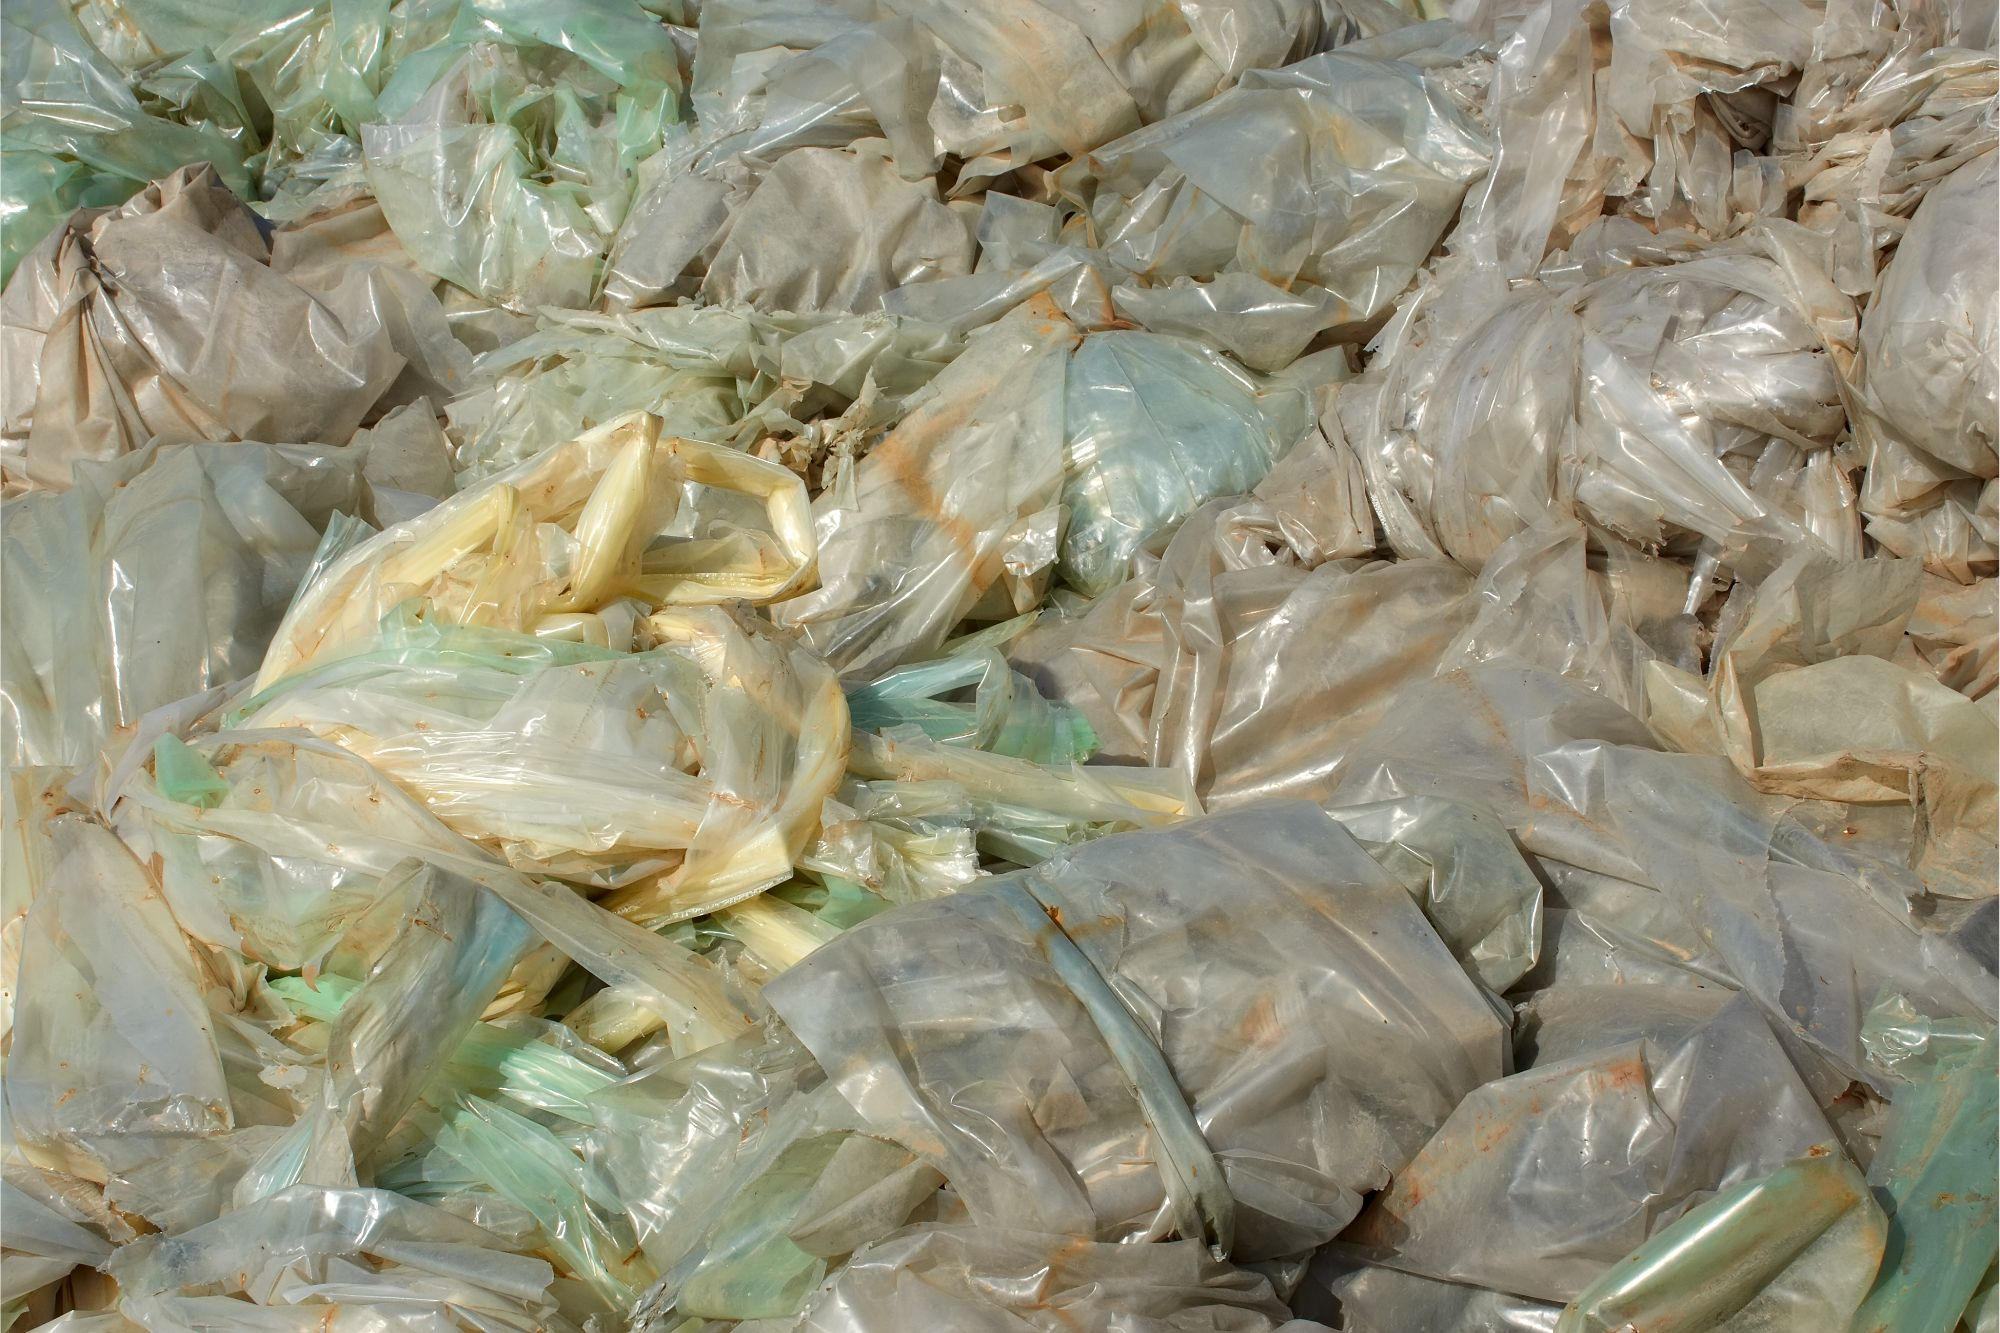 新しいリサイクル方法によりポリエチレン廃棄物は過去のものになる可能性がある